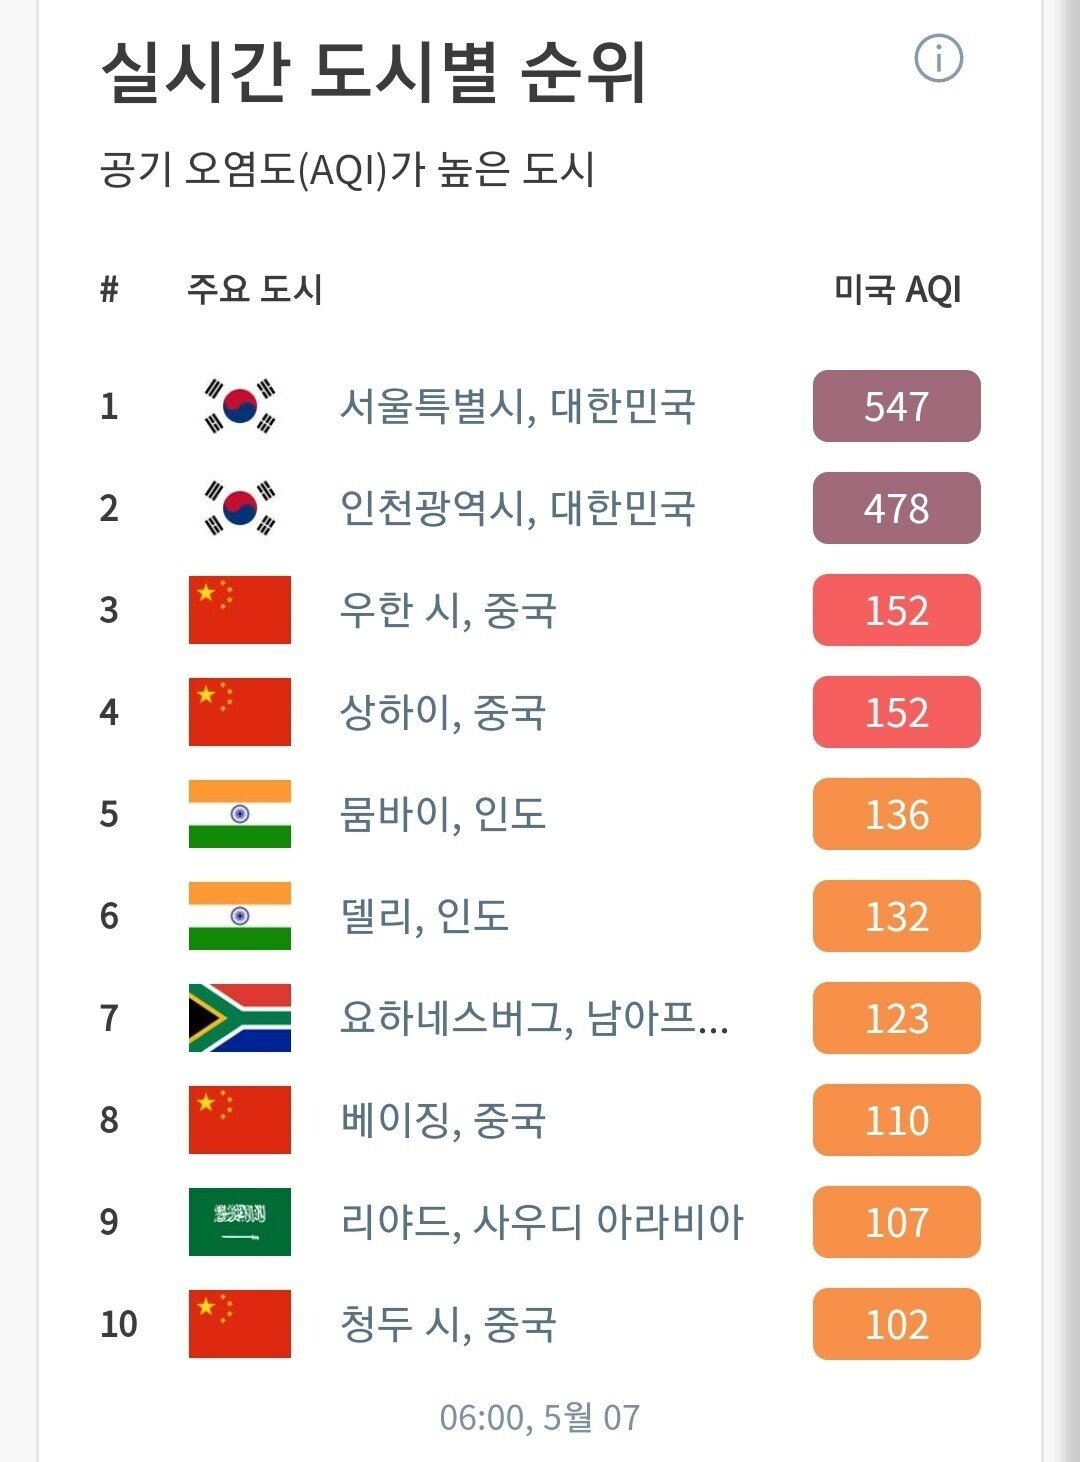 대한민국 현재 아시아 1위 달성...jpg